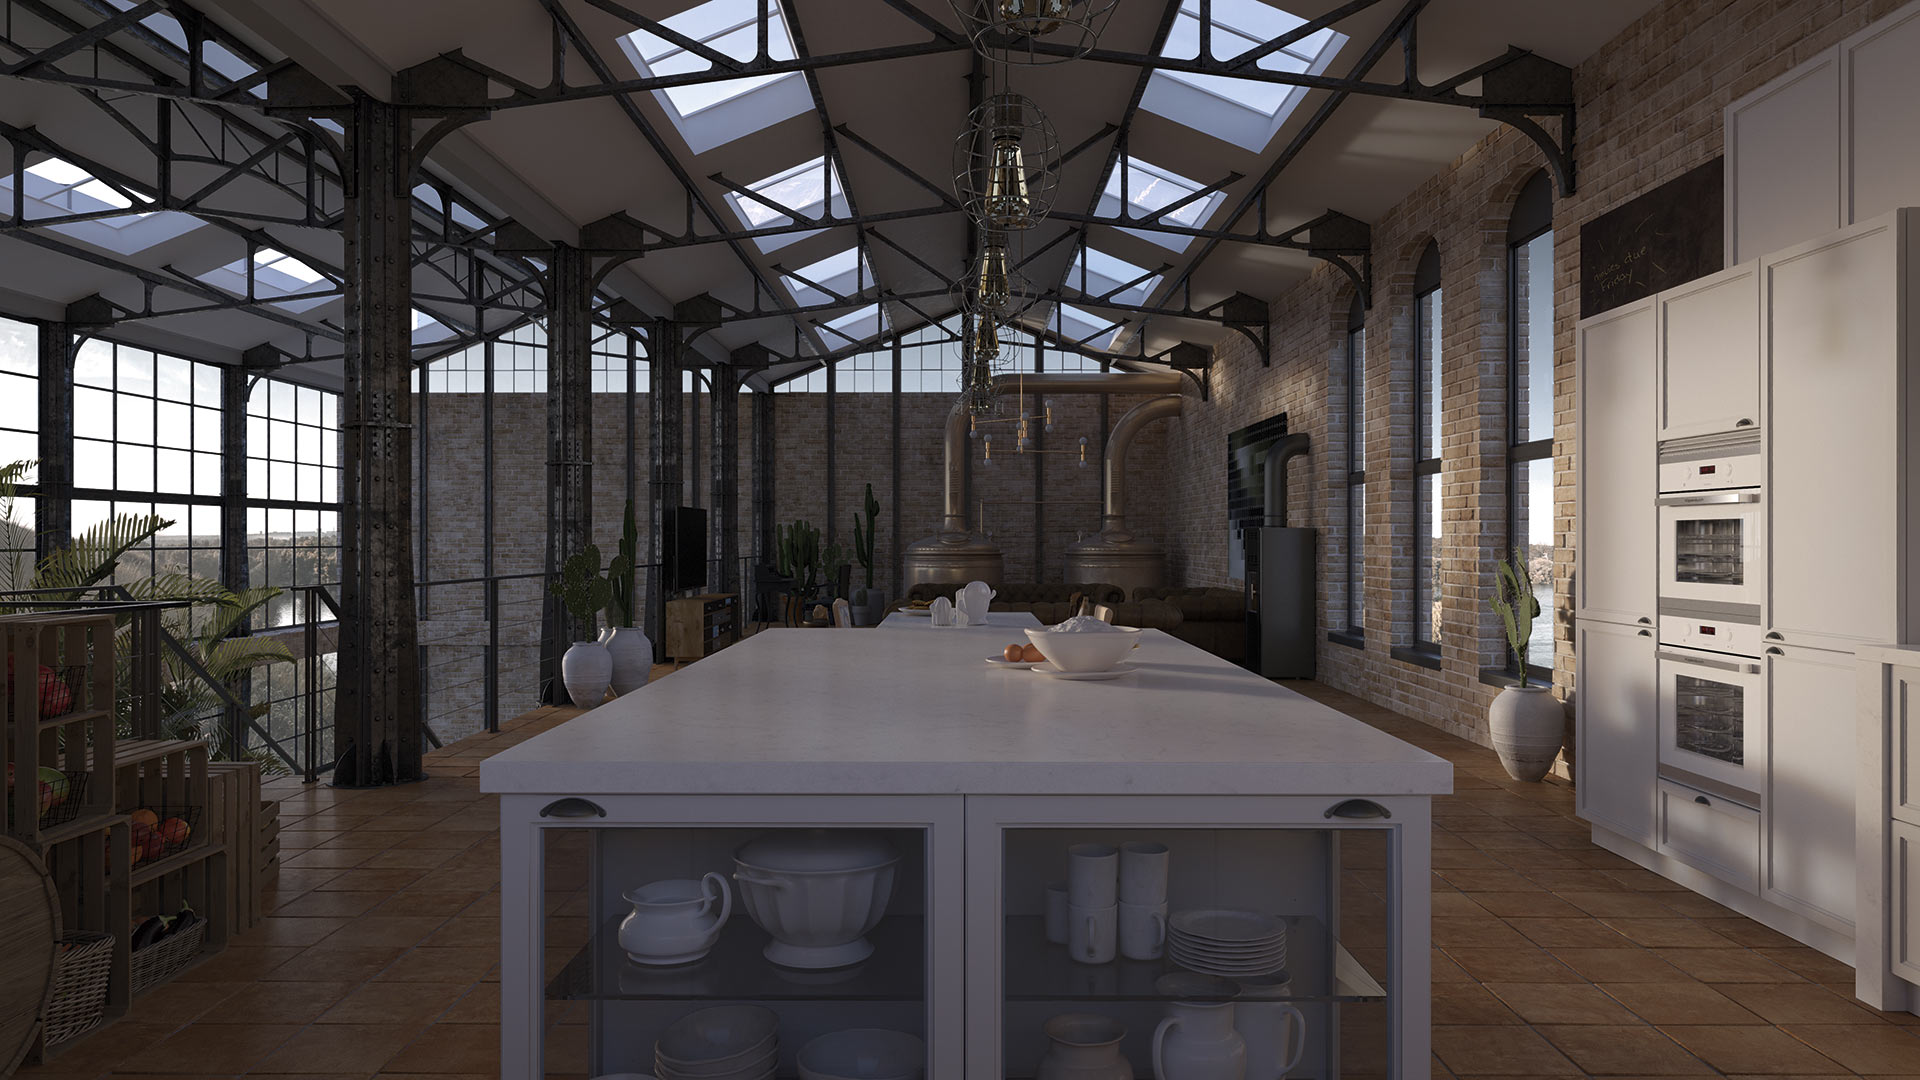 Cocina de diseño clásica y espaciosa con una amplia mesa en el centro y mobiliario a los lados, todo en color blanco